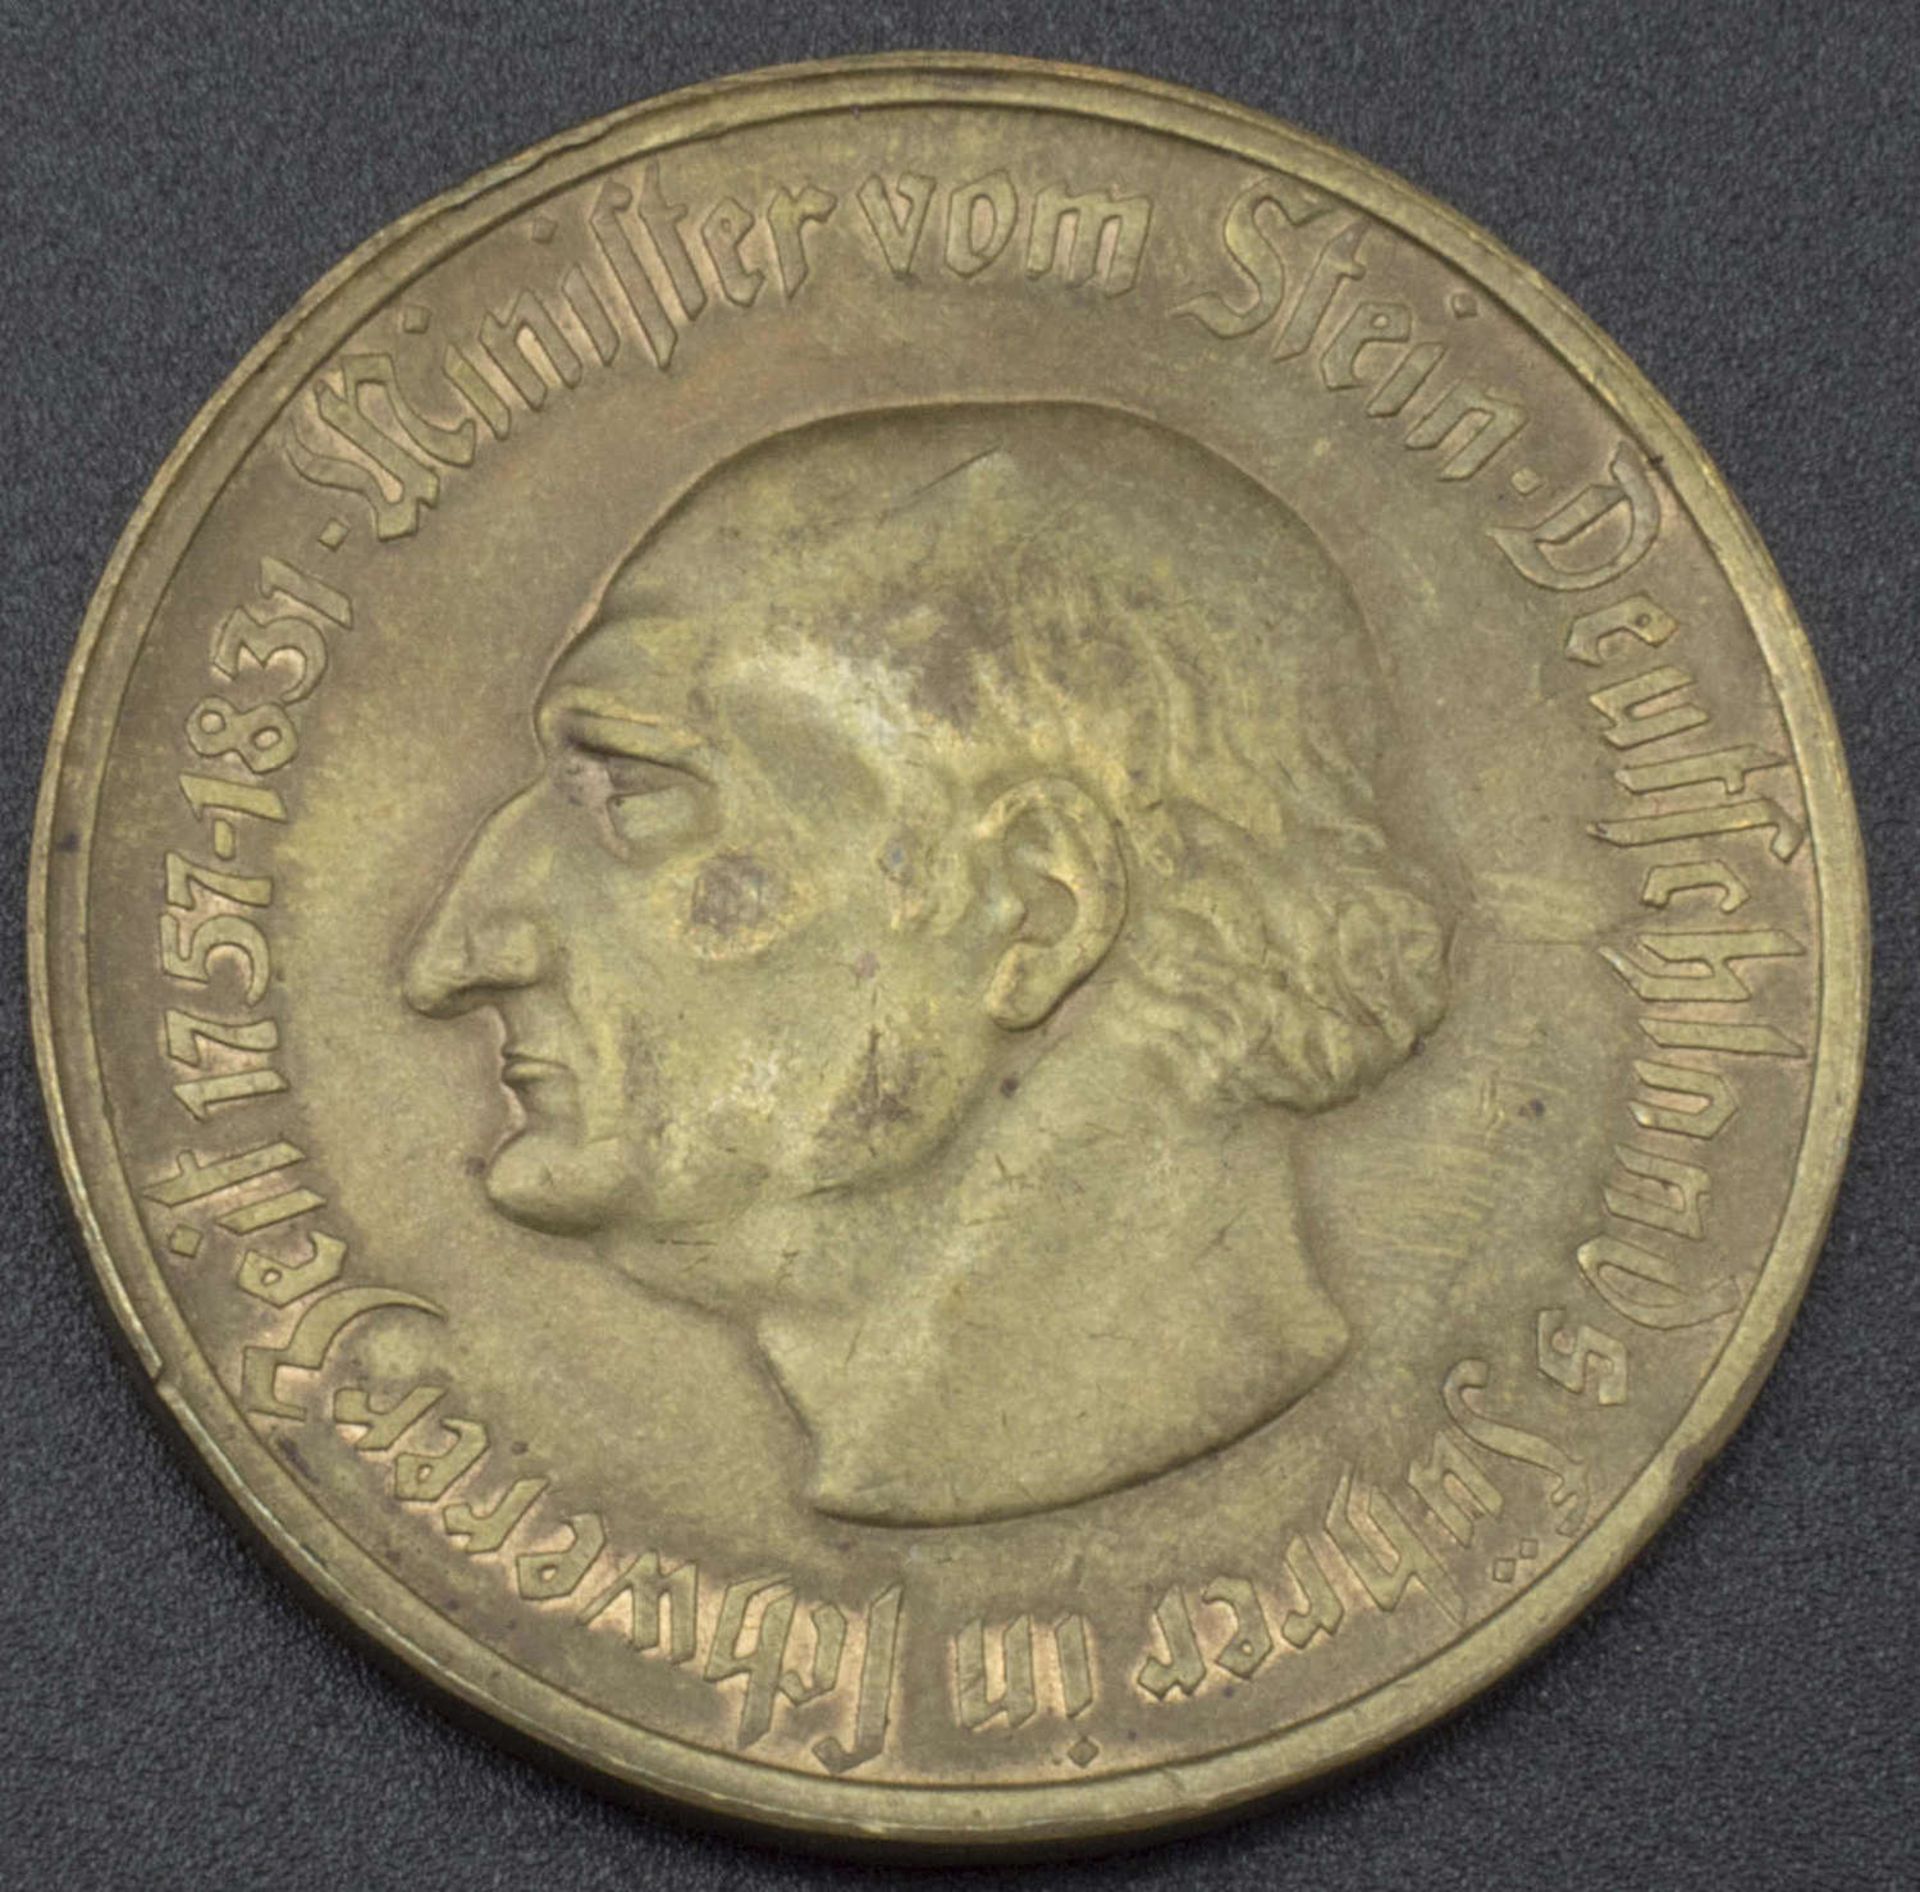 Westfalen 1923, 50 Millionen Mark, Notgeld der Provinz Westfalen - Minister vom Stein Deutschlands - Image 2 of 2